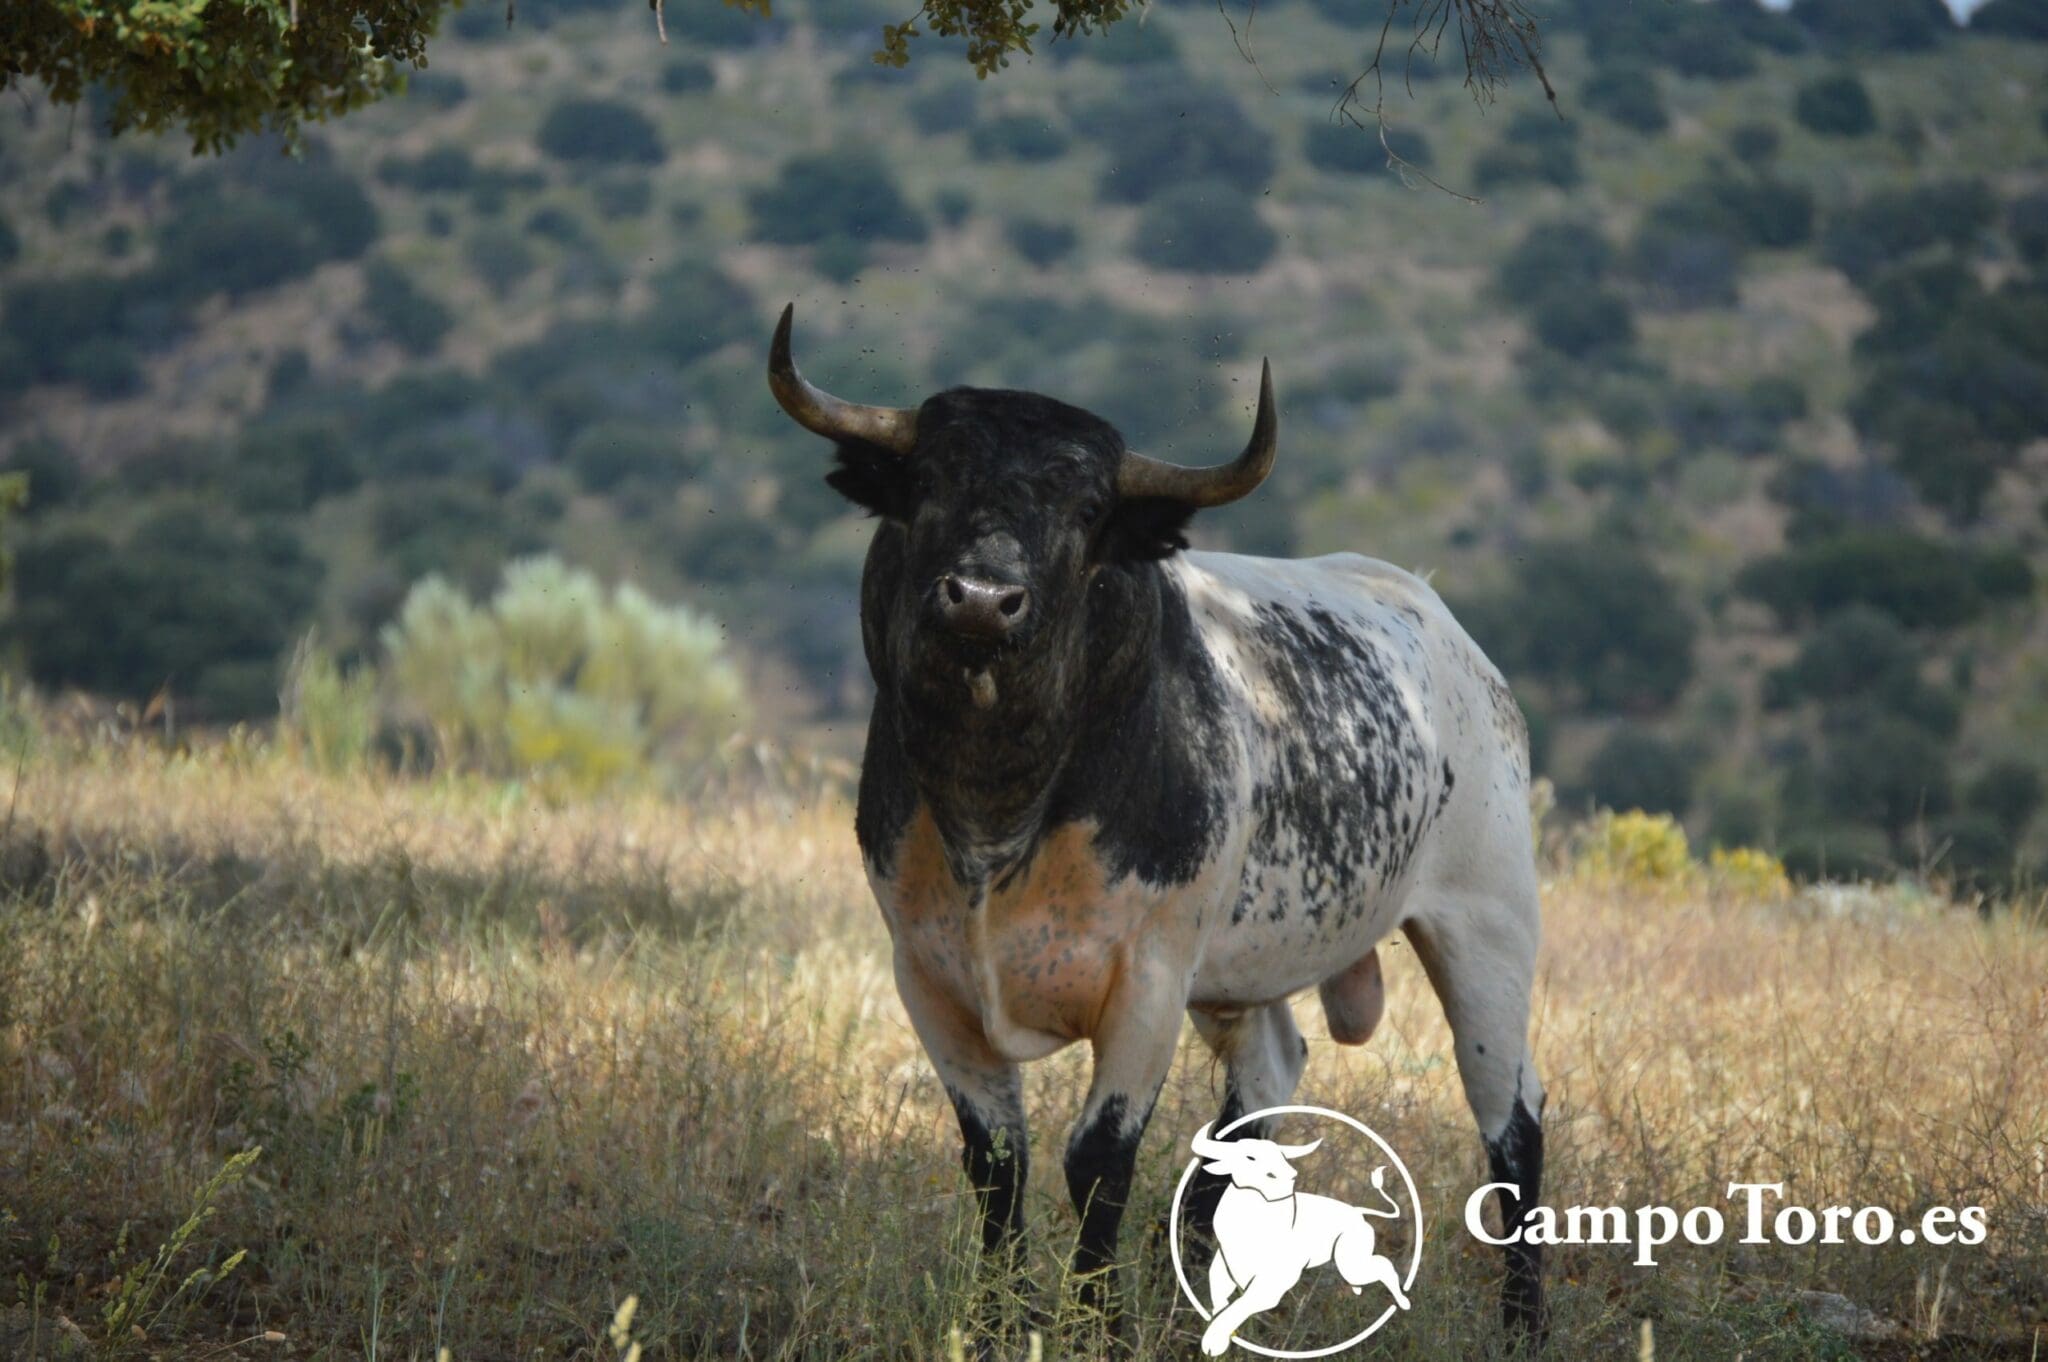 FAQ of bullfighting | CampoToro.es